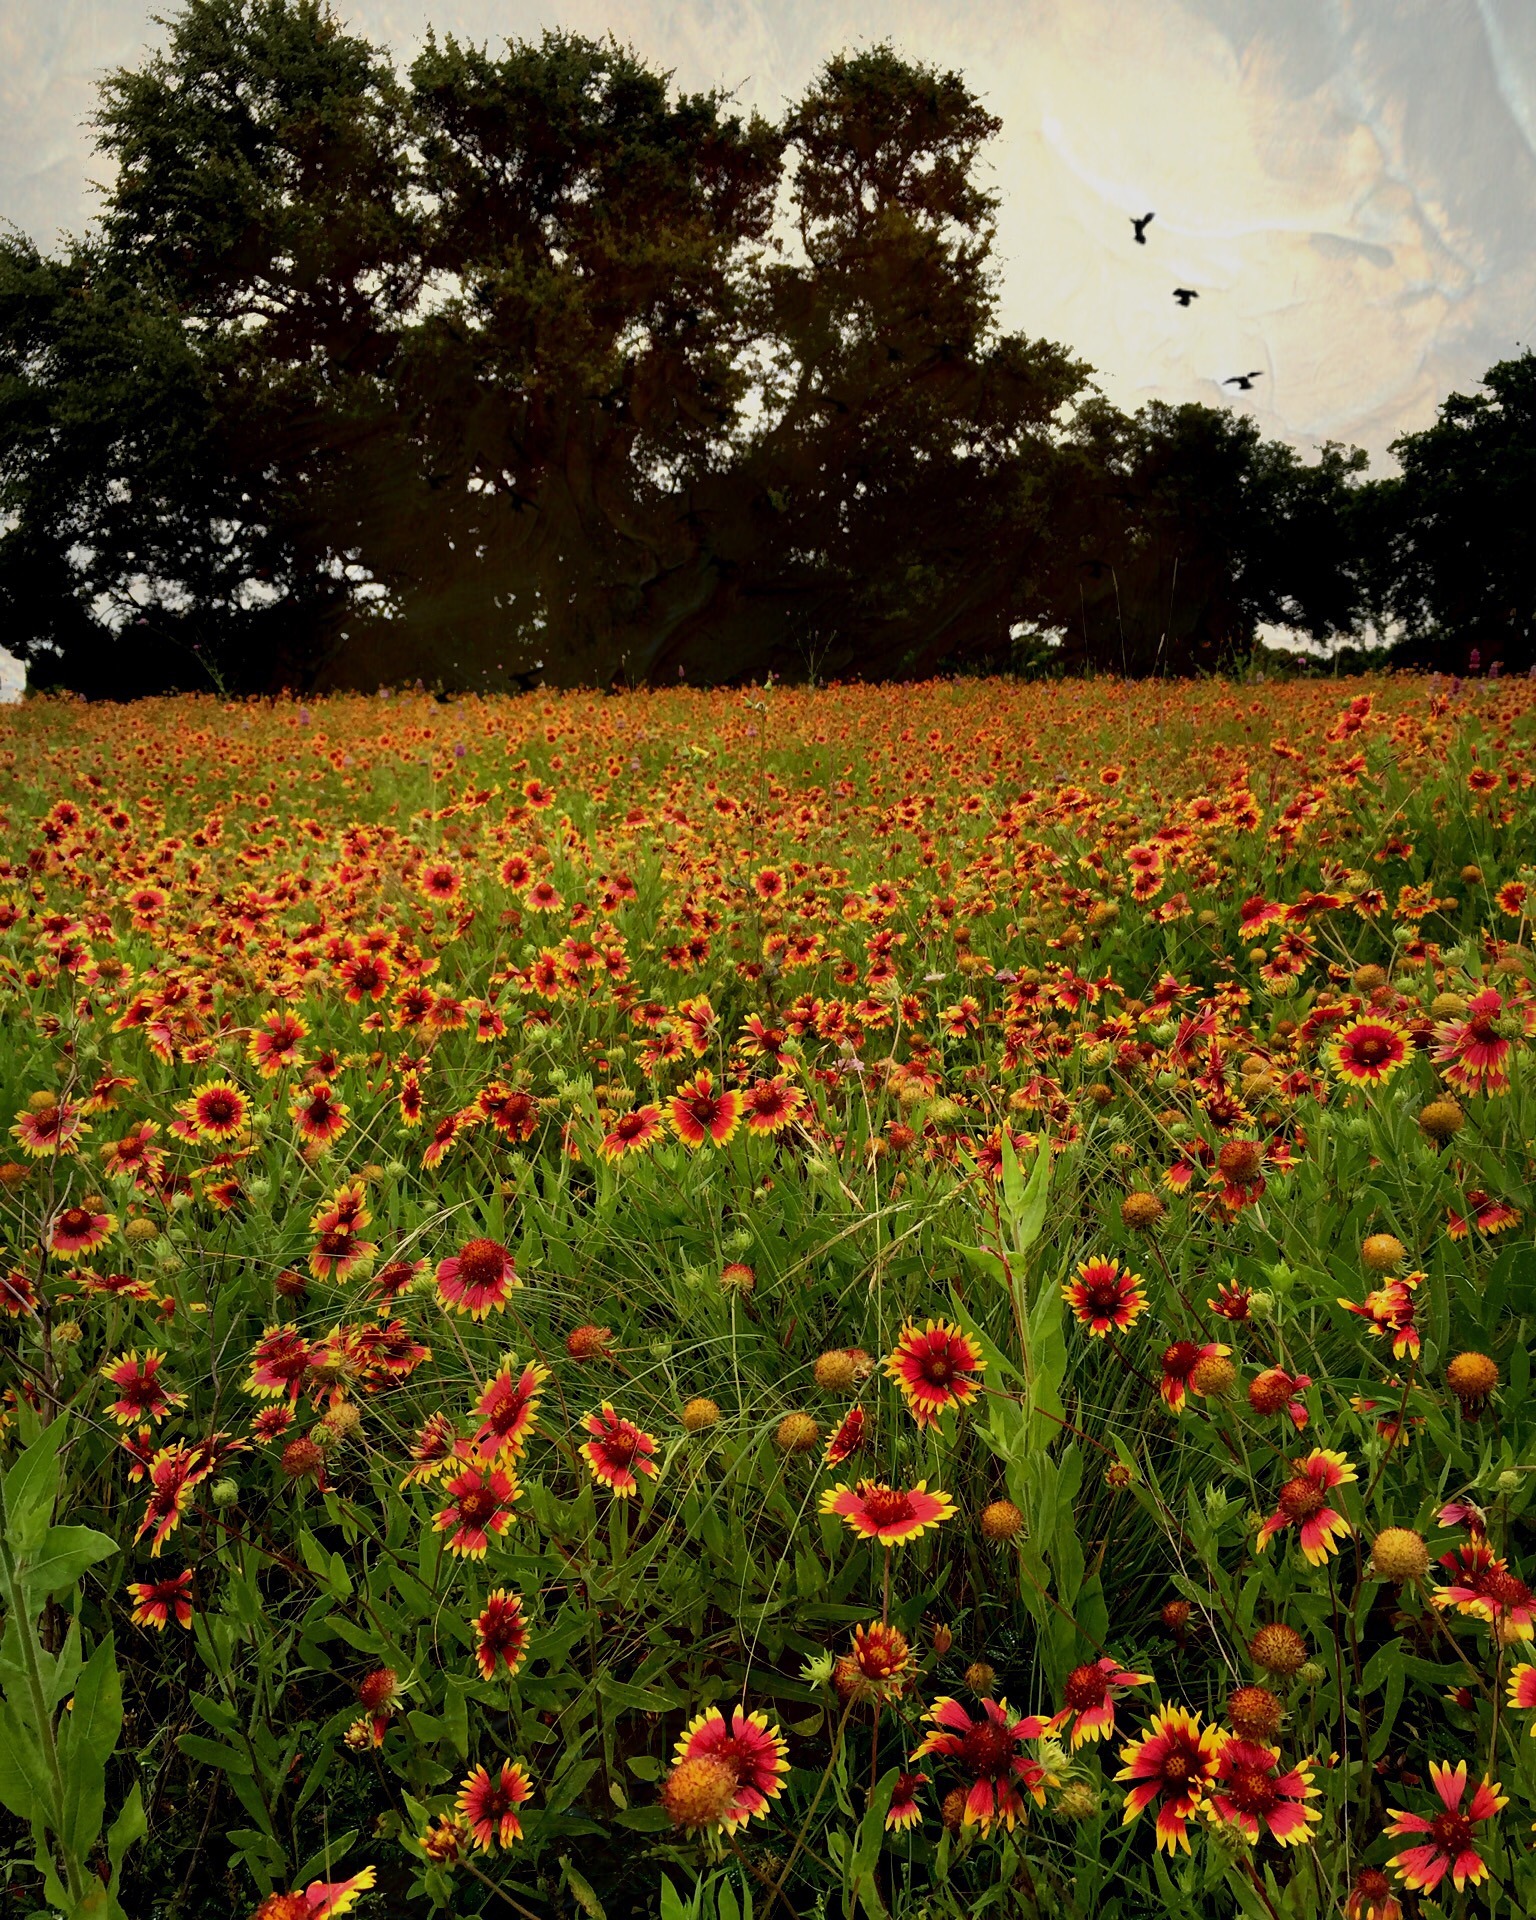 Do you believe in fate? Texas firewheels by @sprittibee